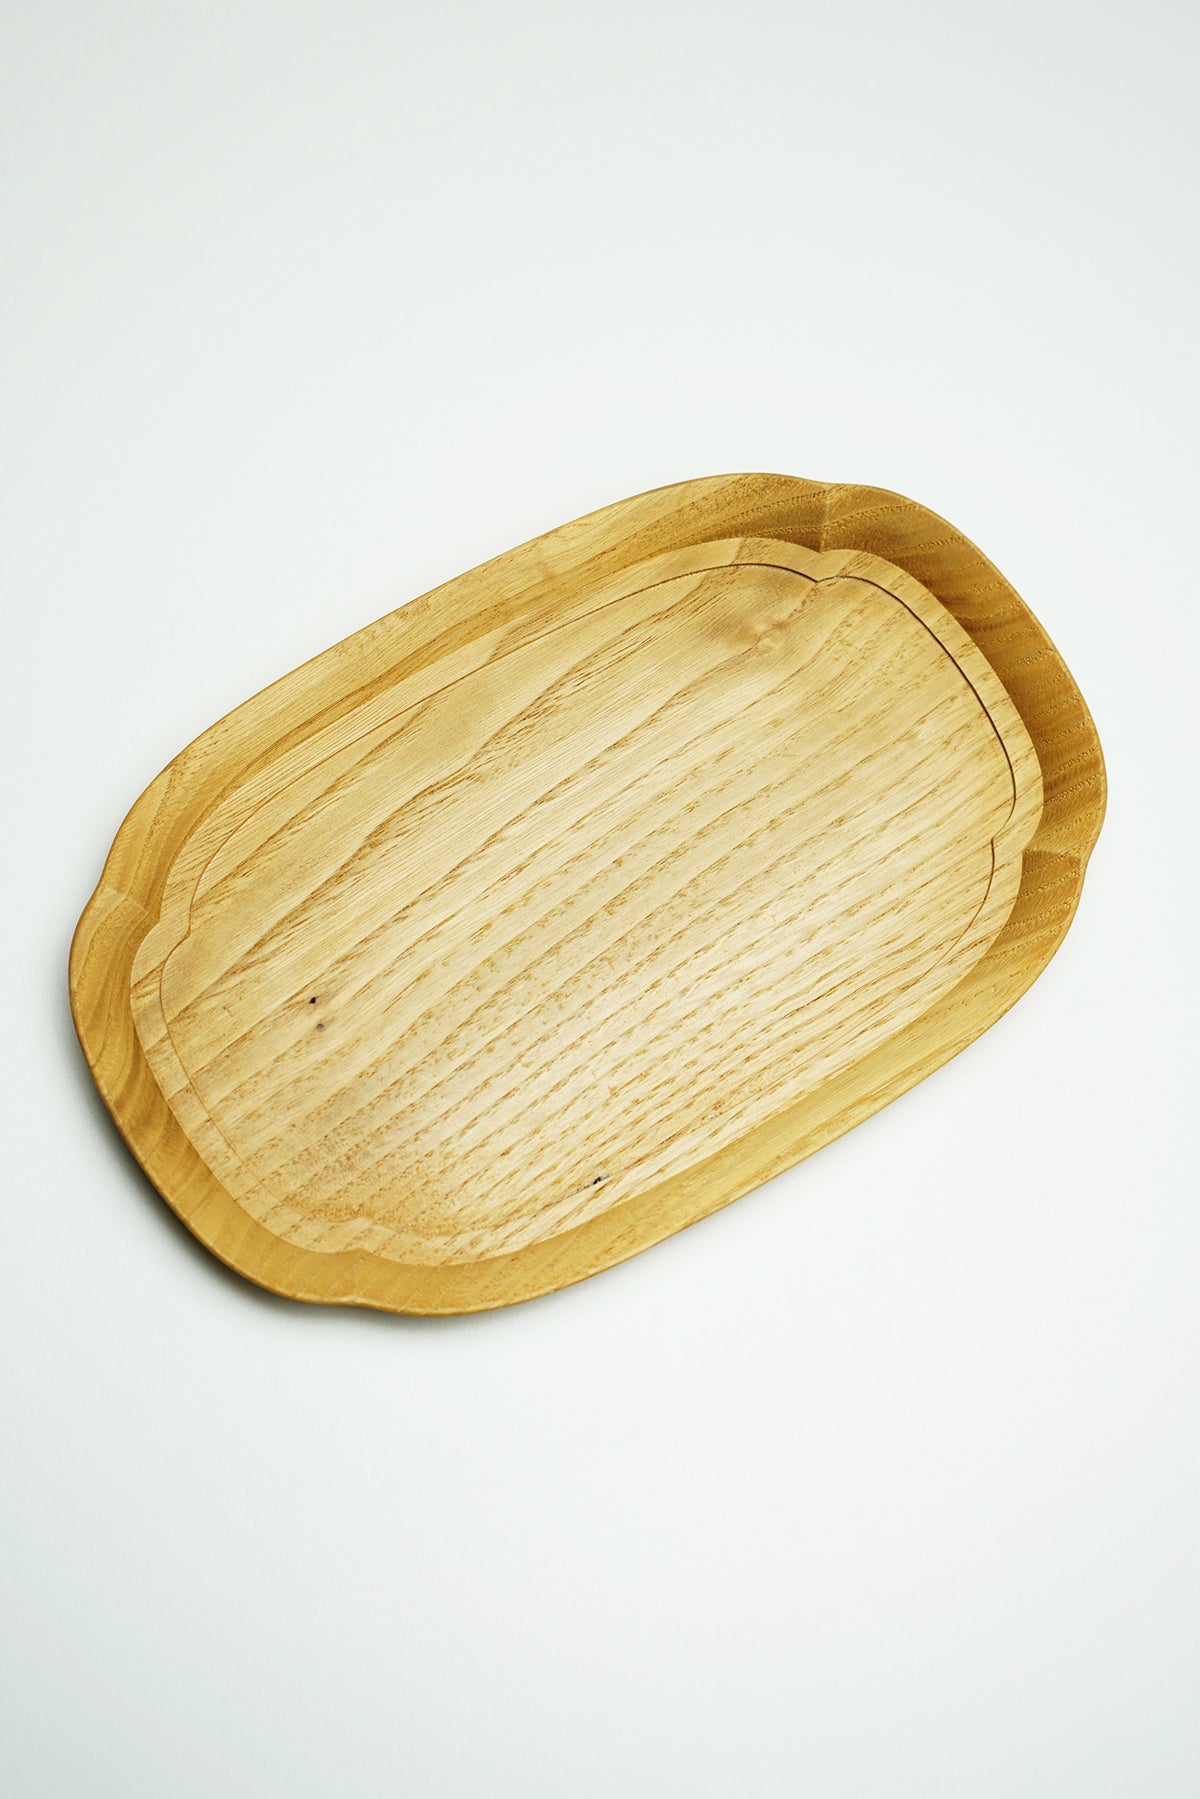 Shirozawa wood craft